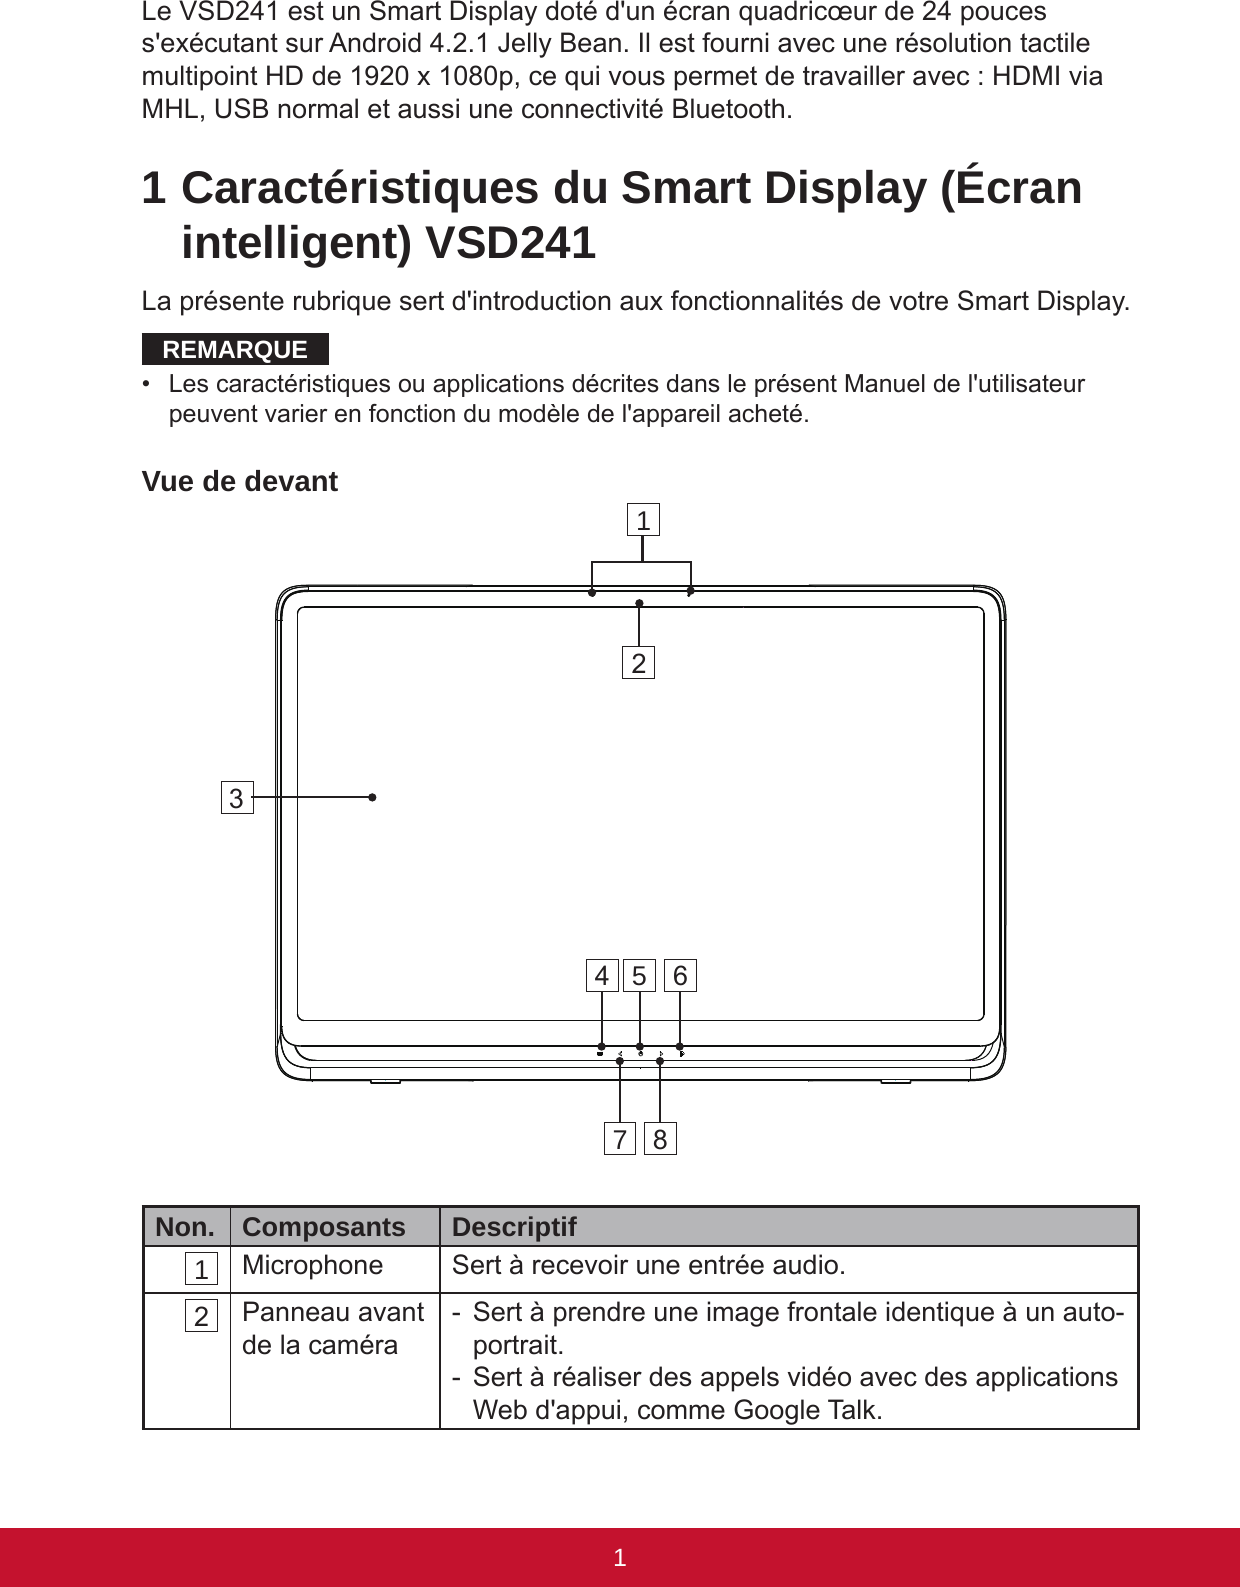 1PBLe VSD241 est un Smart Display doté d&apos;un écran quadricœur de 24 pouces s&apos;exécutant sur Android 4.2.1 Jelly Bean. Il est fourni avec une résolution tactile multipoint HD de 1920 x 1080p, ce qui vous permet de travailler avec : HDMI via MHL, USB normal et aussi une connectivité Bluetooth. 1 Caractéristiques du Smart Display (Écran intelligent) VSD241La présente rubrique sert d&apos;introduction aux fonctionnalités de votre Smart Display.REMARQUE•  Les caractéristiques ou applications décrites dans le présent Manuel de l&apos;utilisateur peuvent varier en fonction du modèle de l&apos;appareil acheté.Vue de devantNon. Composants  Descriptif 1 Microphone Sert à recevoir une entrée audio. 2 Panneau avant de la caméra -  Sert à prendre une image frontale identique à un auto-portrait. -  Sert à réaliser des appels vidéo avec des applications Web d&apos;appui, comme Google Talk.14567823